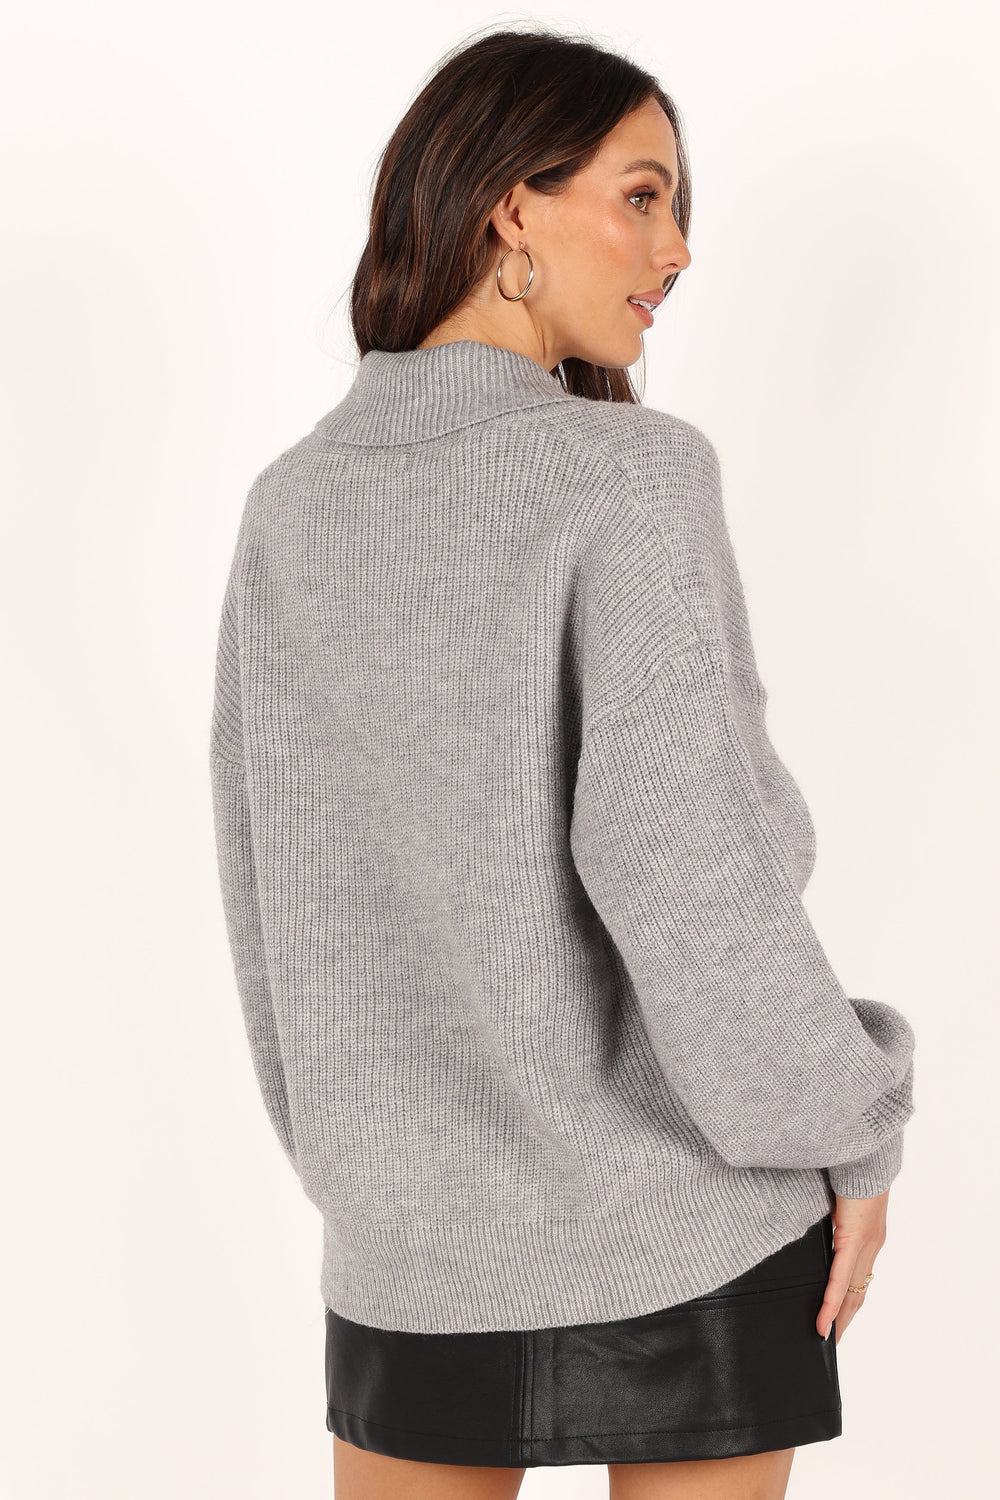 KNITWEAR @Carly Collar Knit Sweater - Grey